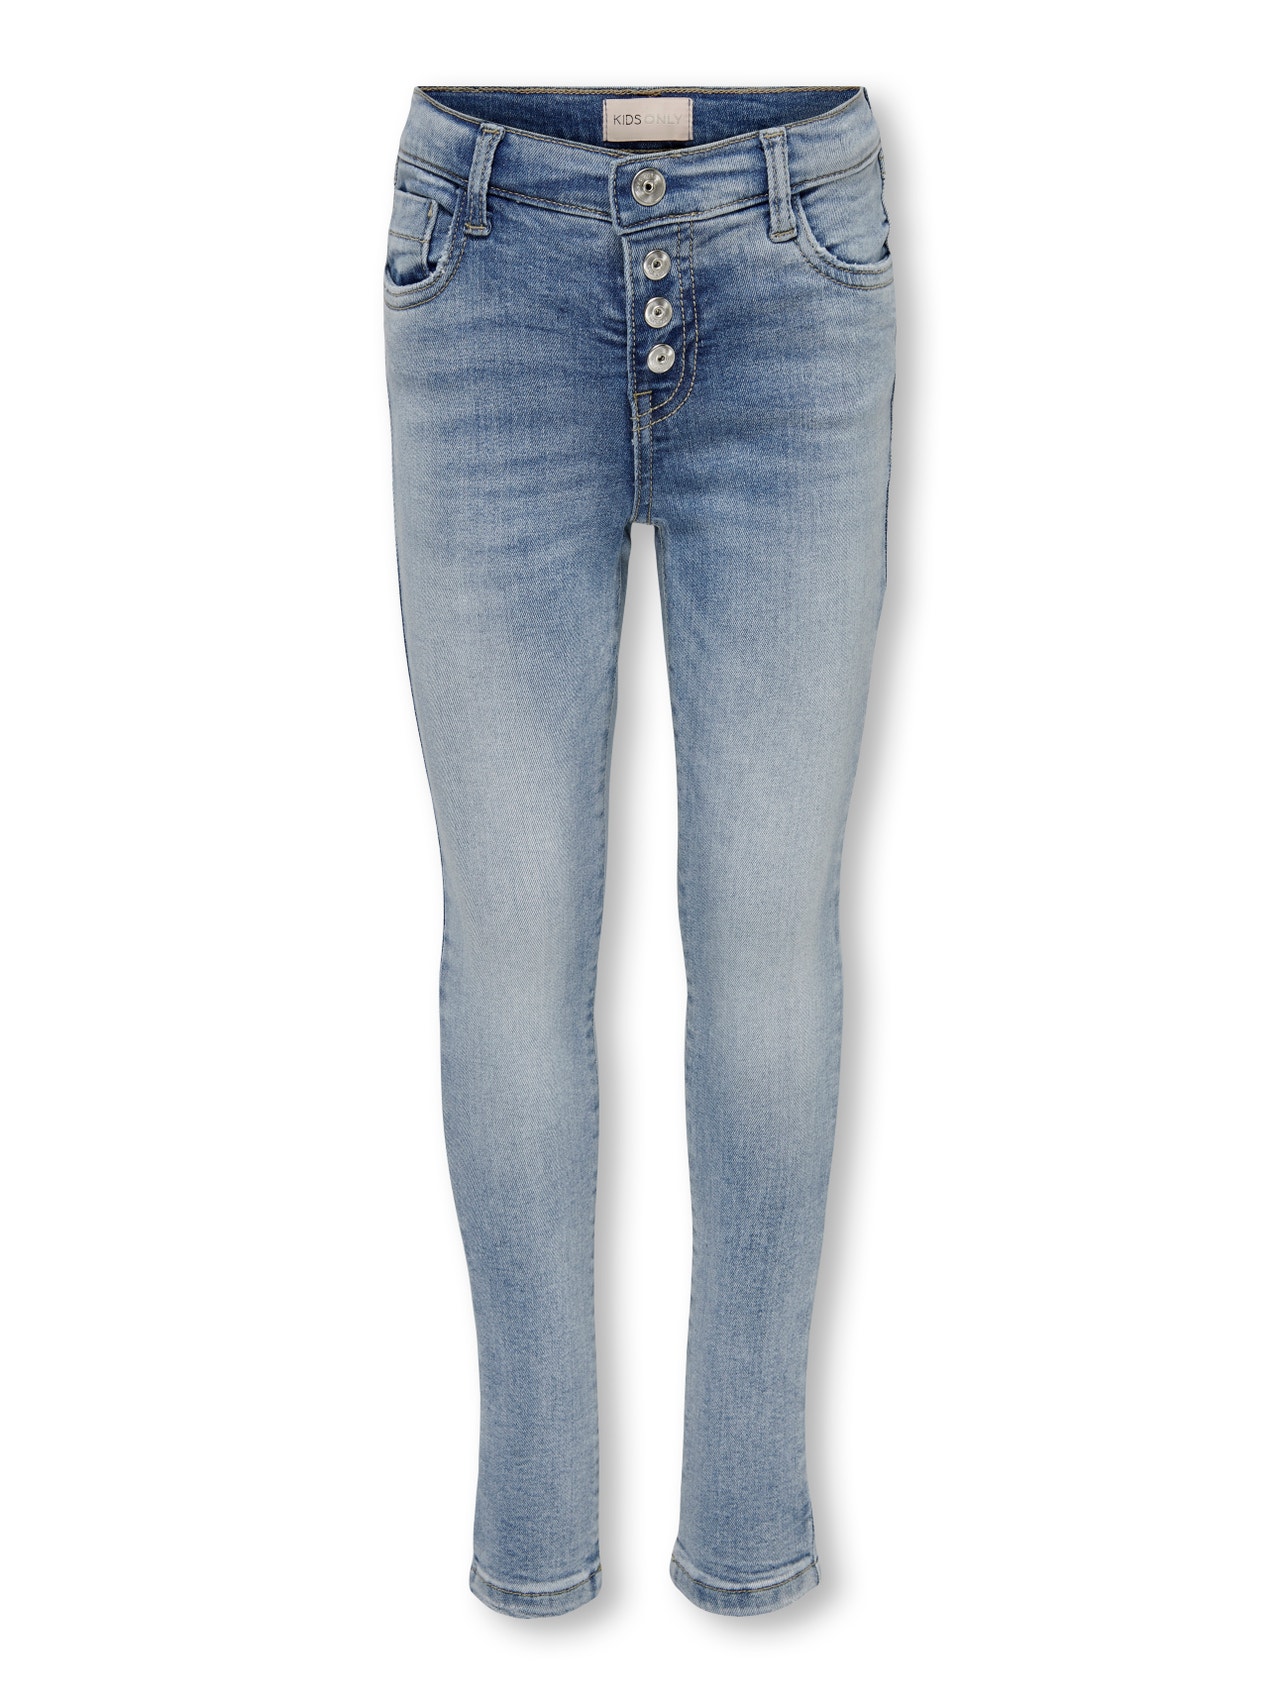 ONLY Skinny Fit Jeans -Light Blue Denim - 15281005